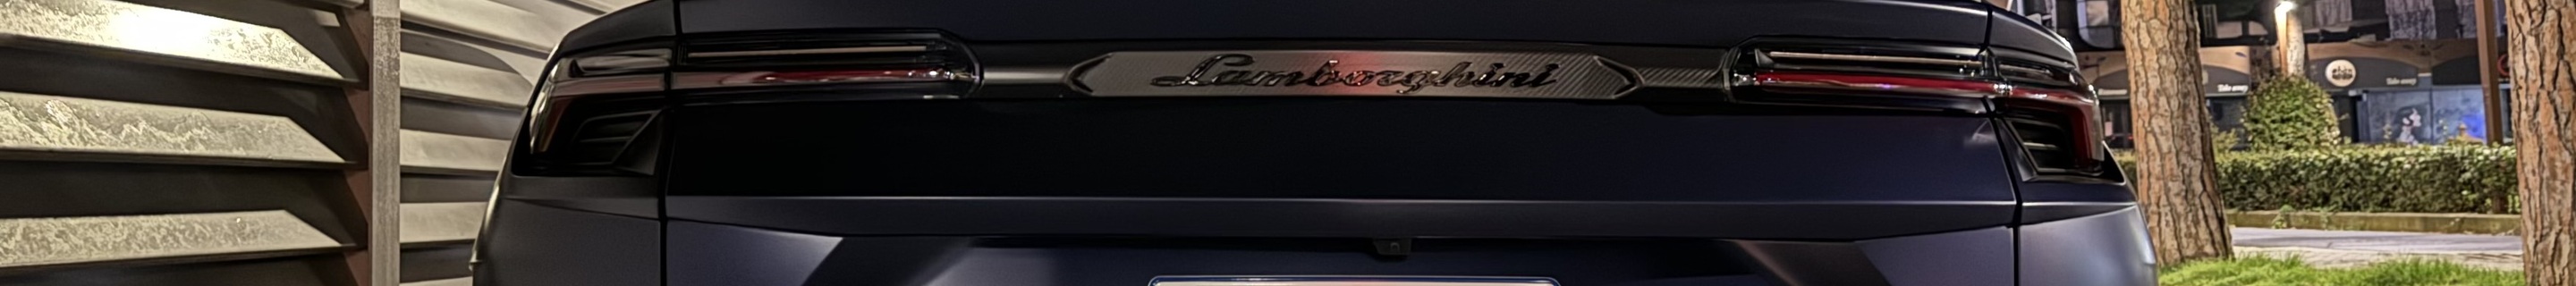 Lamborghini Urus Performante Essenza SCV12 Limited Edition